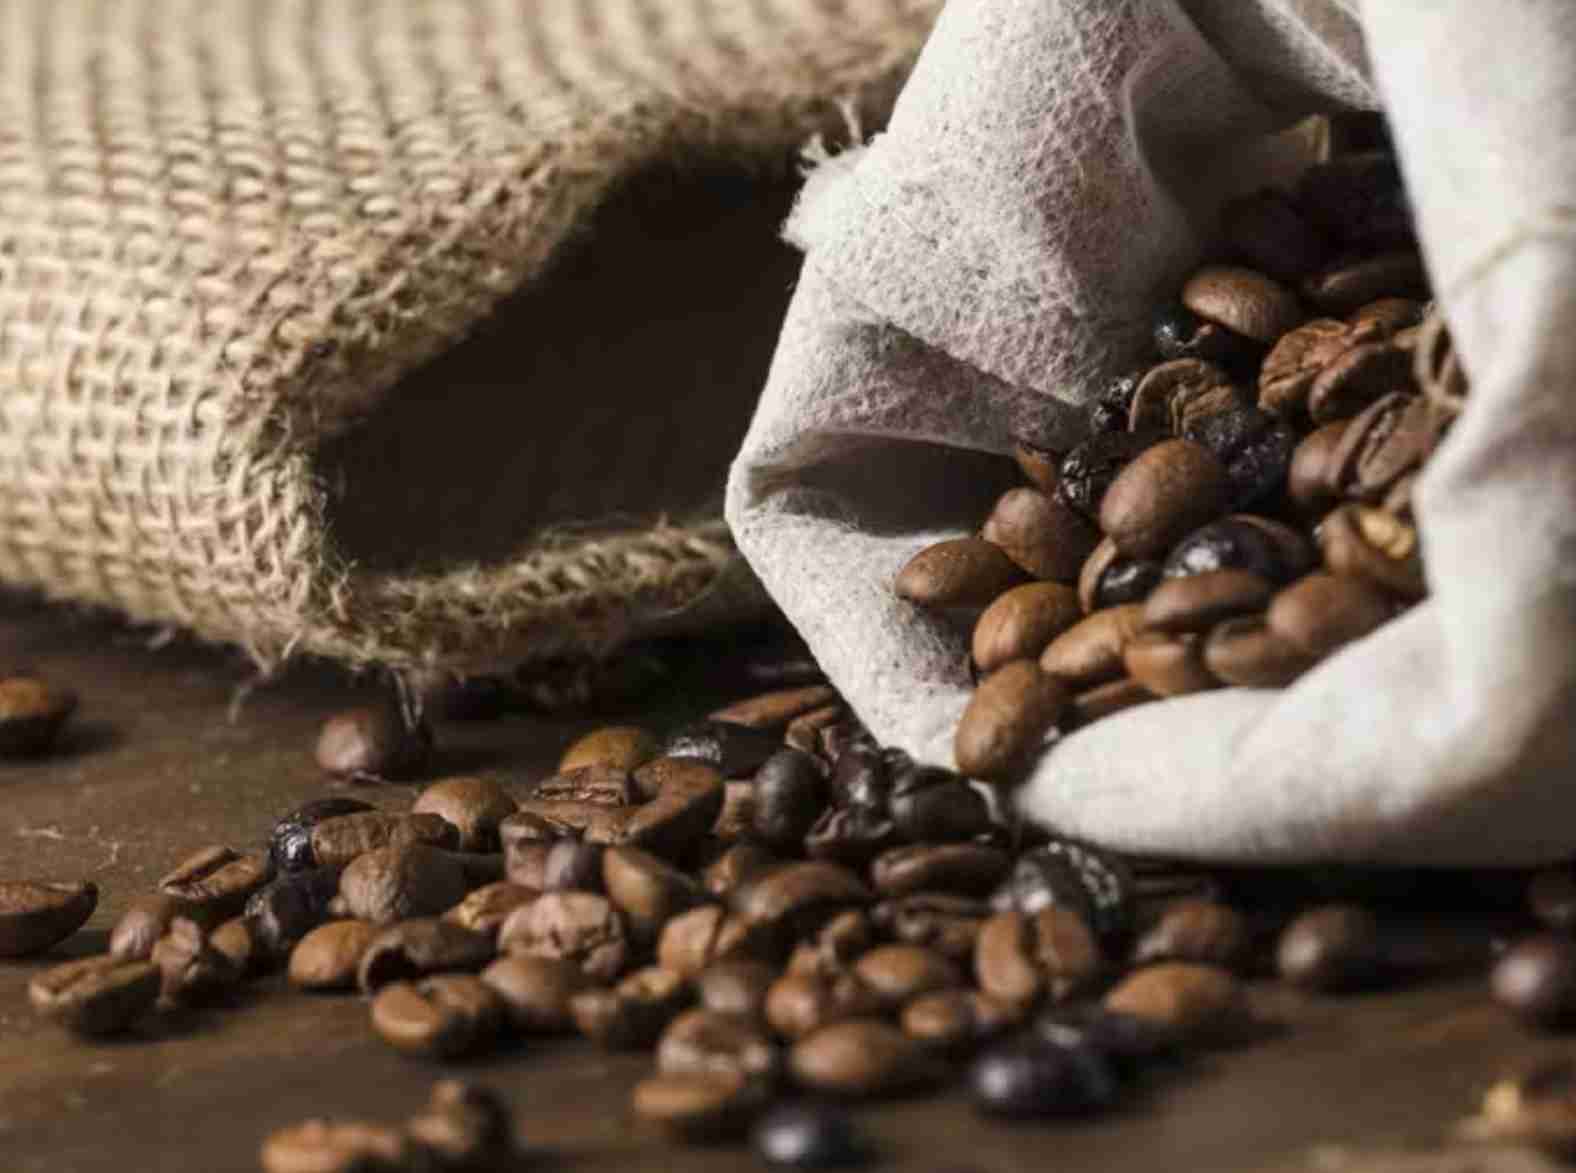 Mercado Futuro do Café Arábica: Análise das negociações e impactos globais